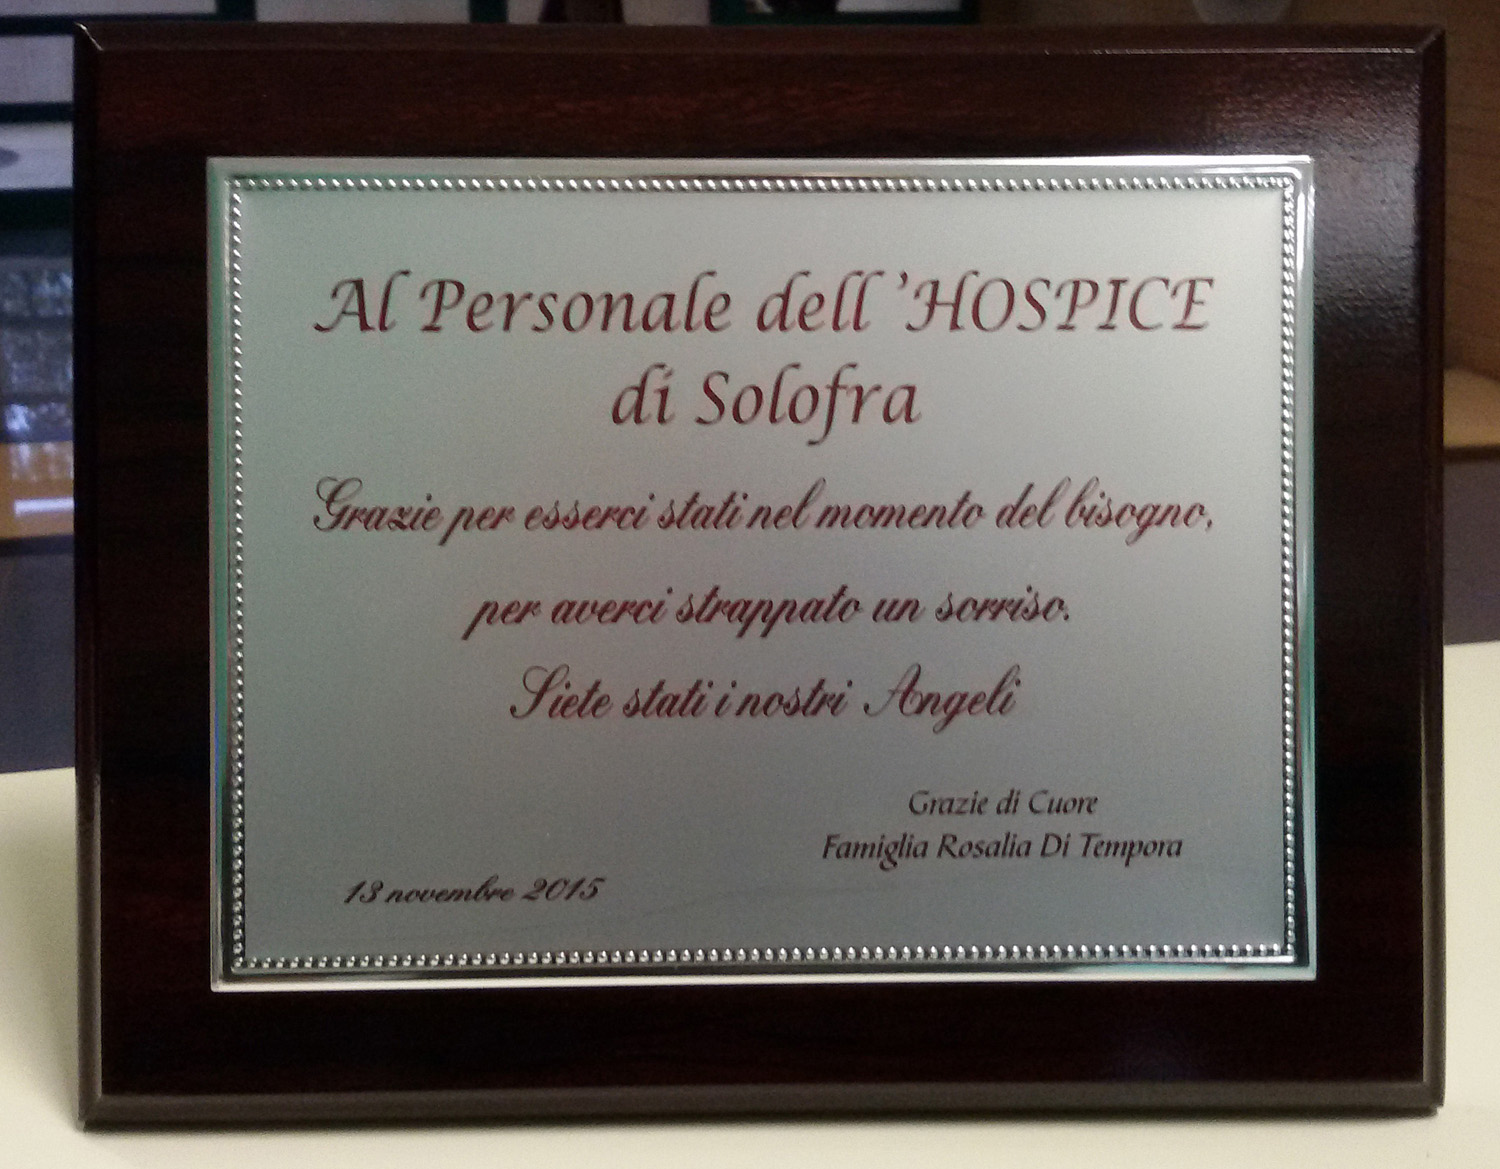  La targa della famiglia Di Tempora per ringraziare gli operatori dell’Hospice di Solofra